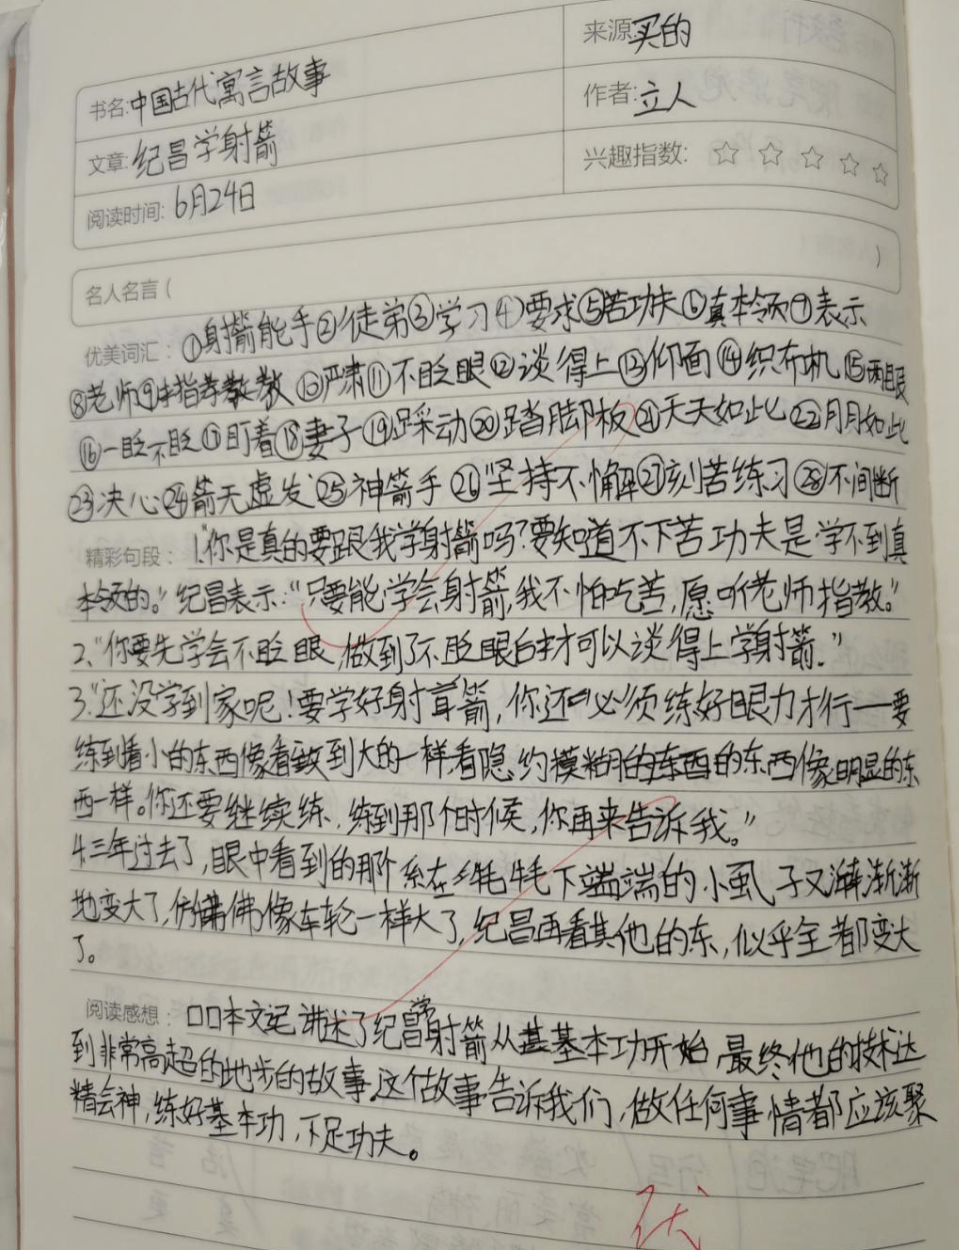 栏目 1 读书笔记 2 读书笔记 三年1班 三年1班 我读了《中国古代